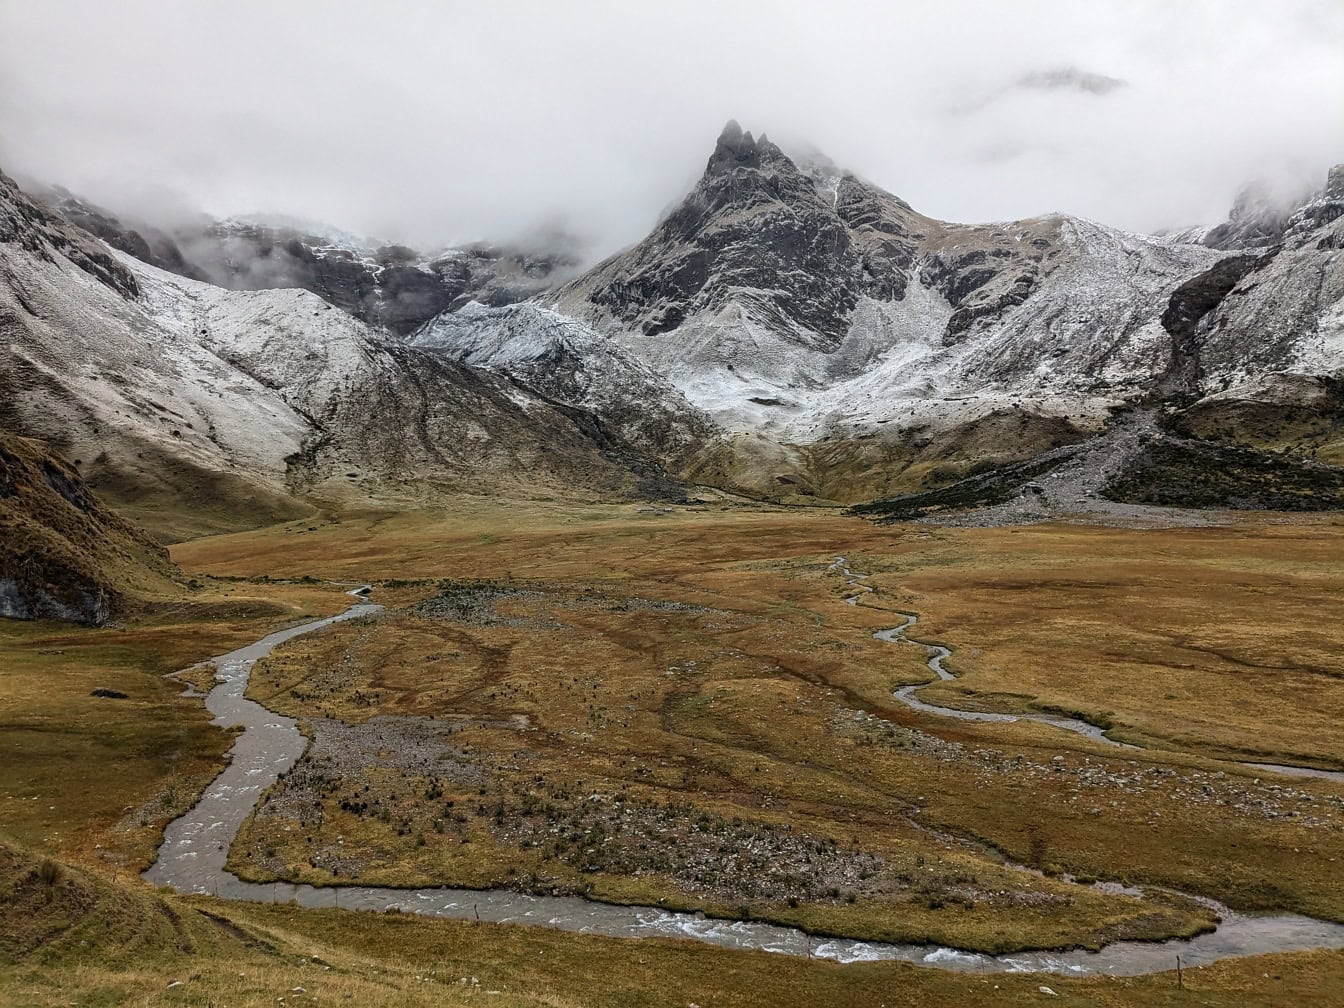 Peru’daki Cordillera Huayhuash sıradağlarında karla kaplı dağların bulunduğu bir vadiden geçen nehir